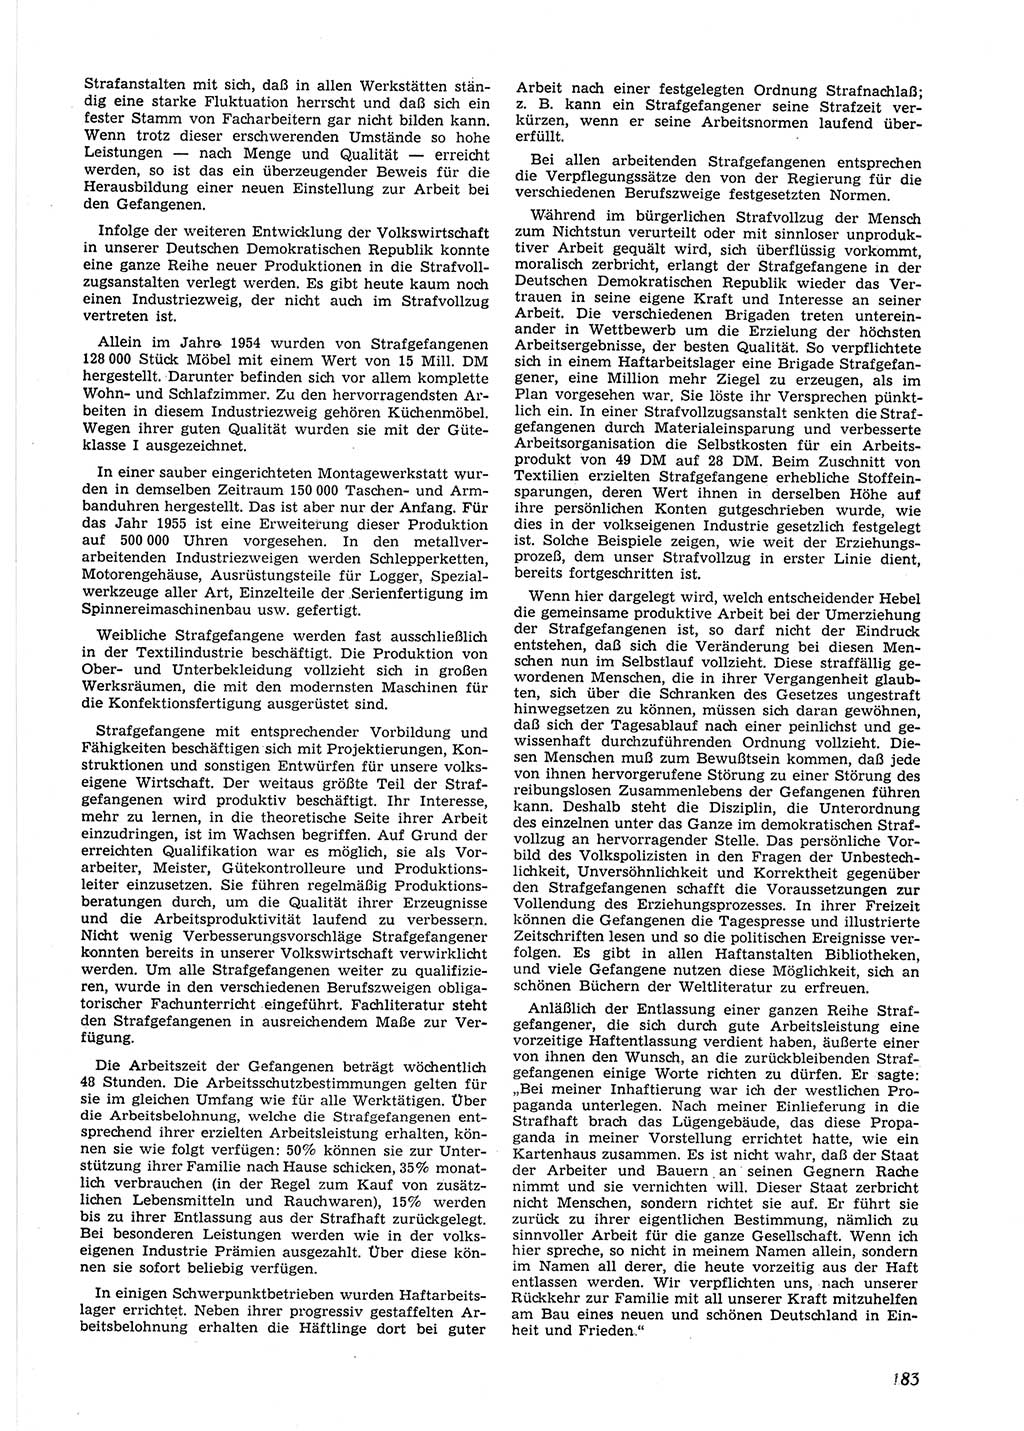 Neue Justiz (NJ), Zeitschrift für Recht und Rechtswissenschaft [Deutsche Demokratische Republik (DDR)], 9. Jahrgang 1955, Seite 183 (NJ DDR 1955, S. 183)